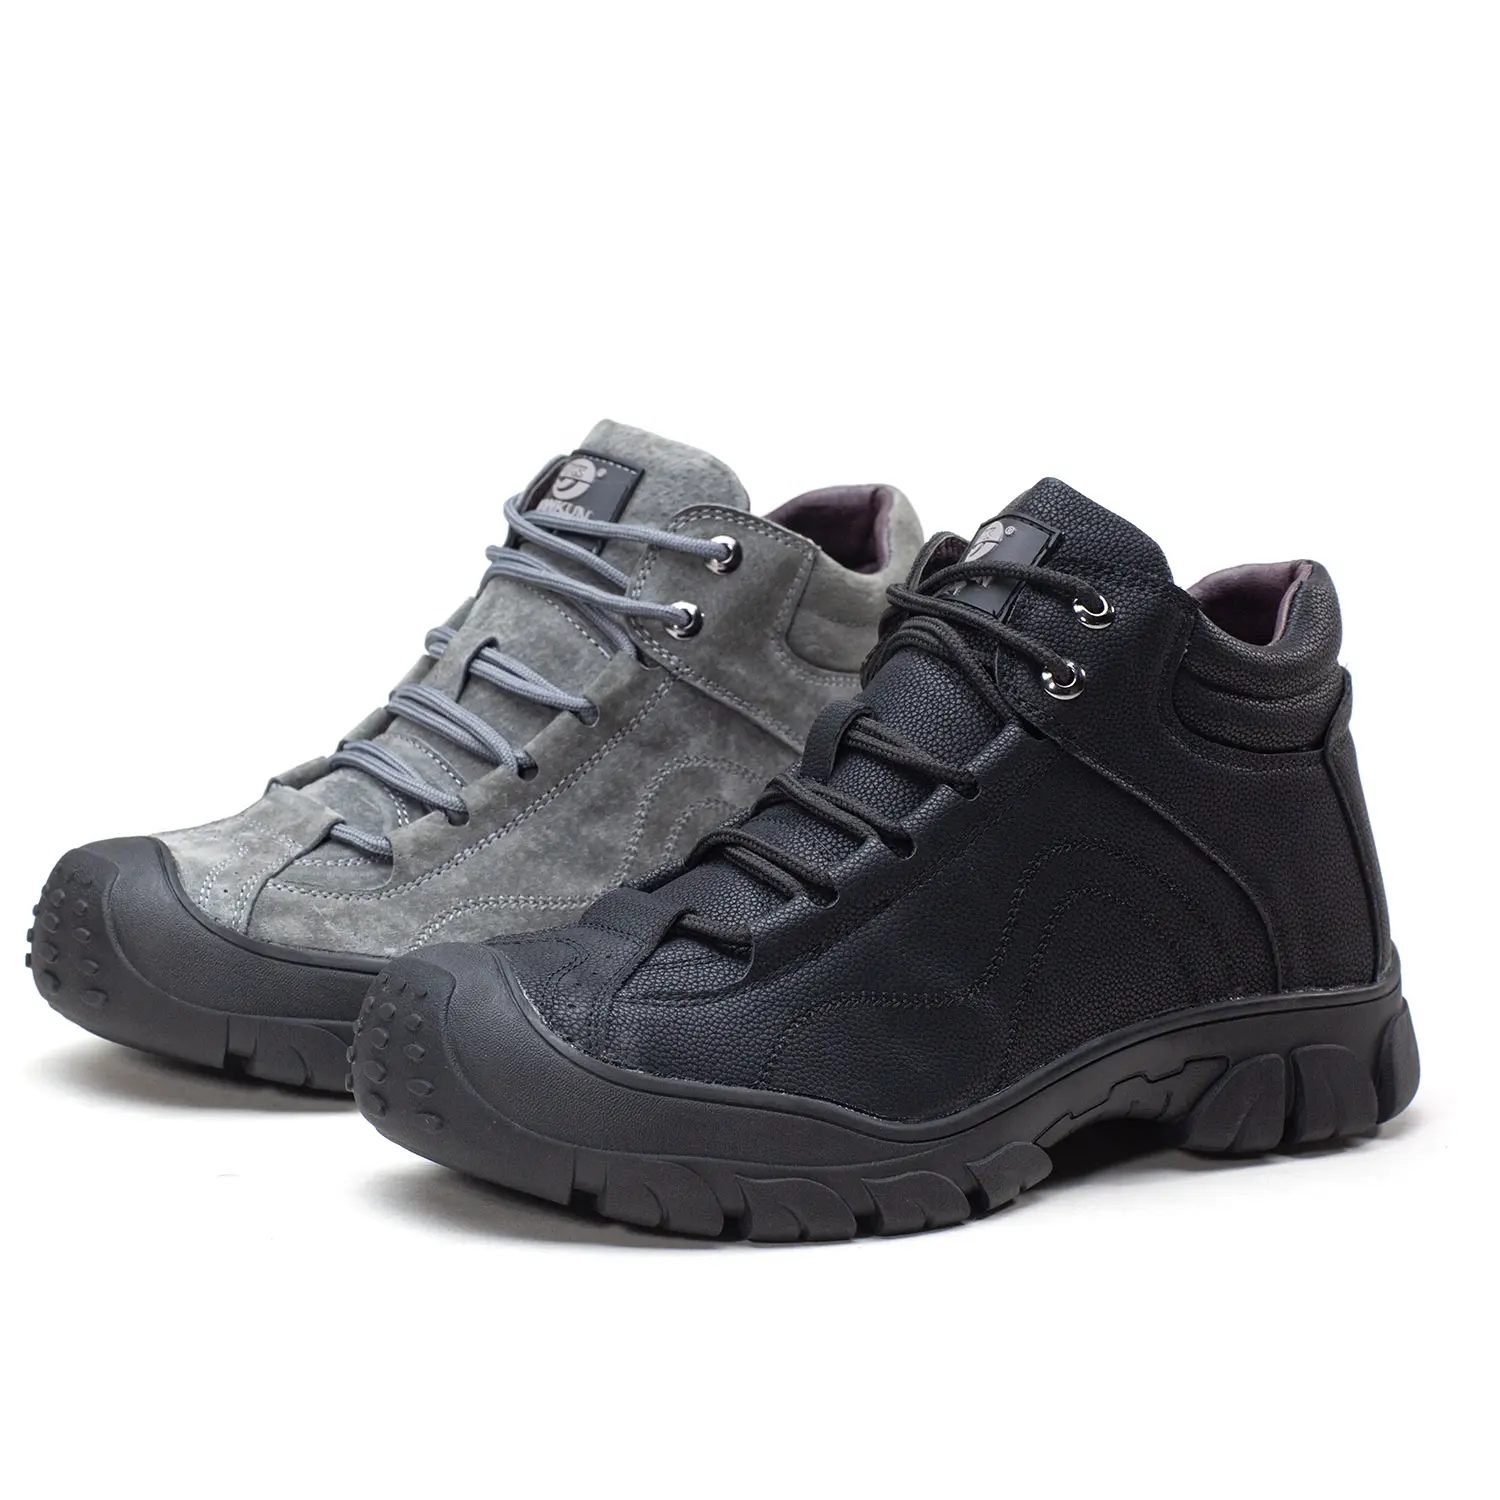 Yüksek top deri oem çizmeler S1 S2 S3 yeni tasarım inşaat kış çalışma çelik ayak iyi düşük fiyat güvenlik ayakkabıları